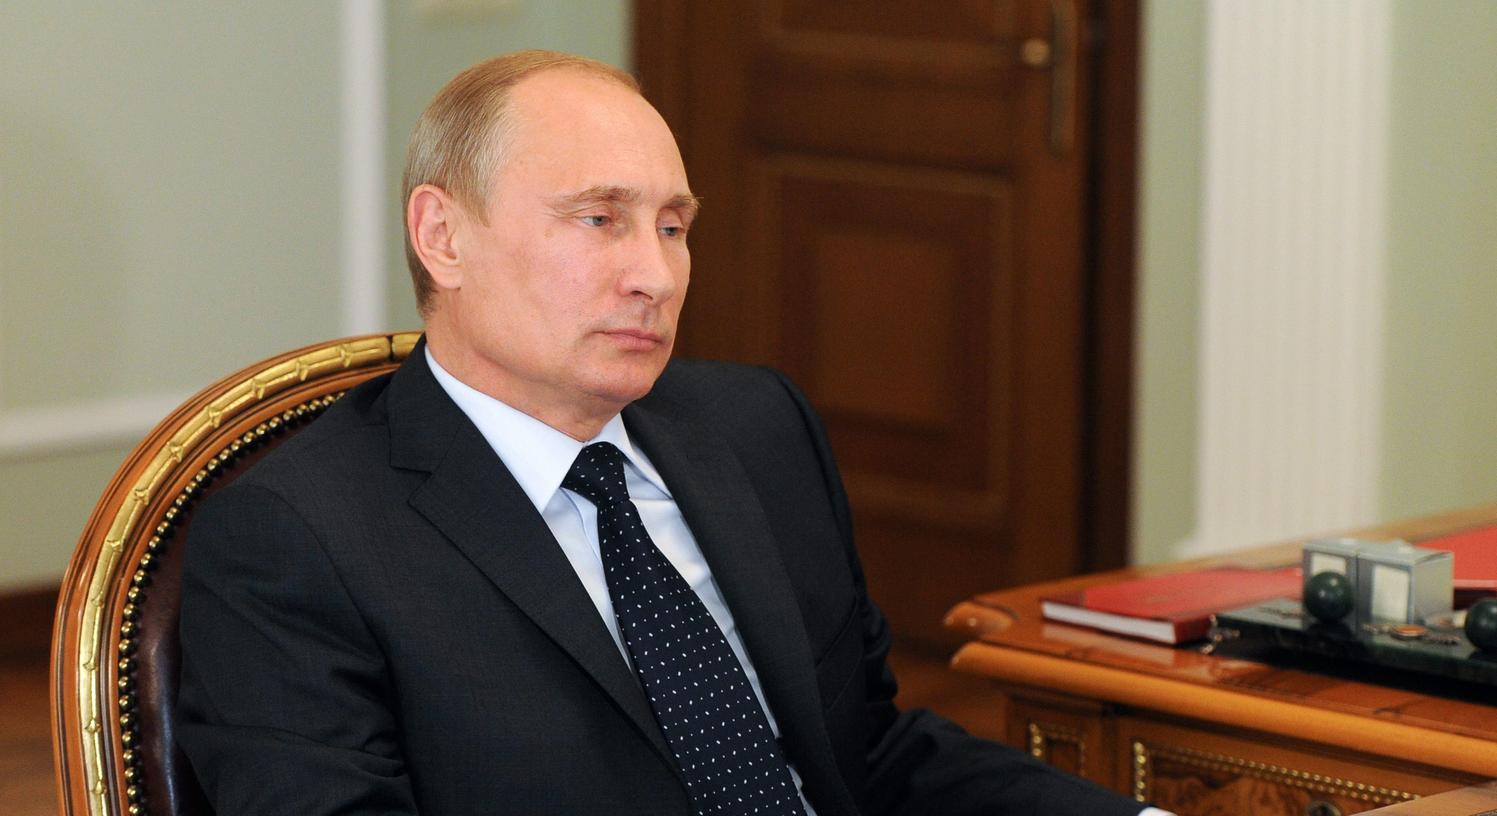 Putin lässt an der ukrainischen Grenze weitere Truppen aufmarschieren und verhängte Sanktionen gegen den Westen.